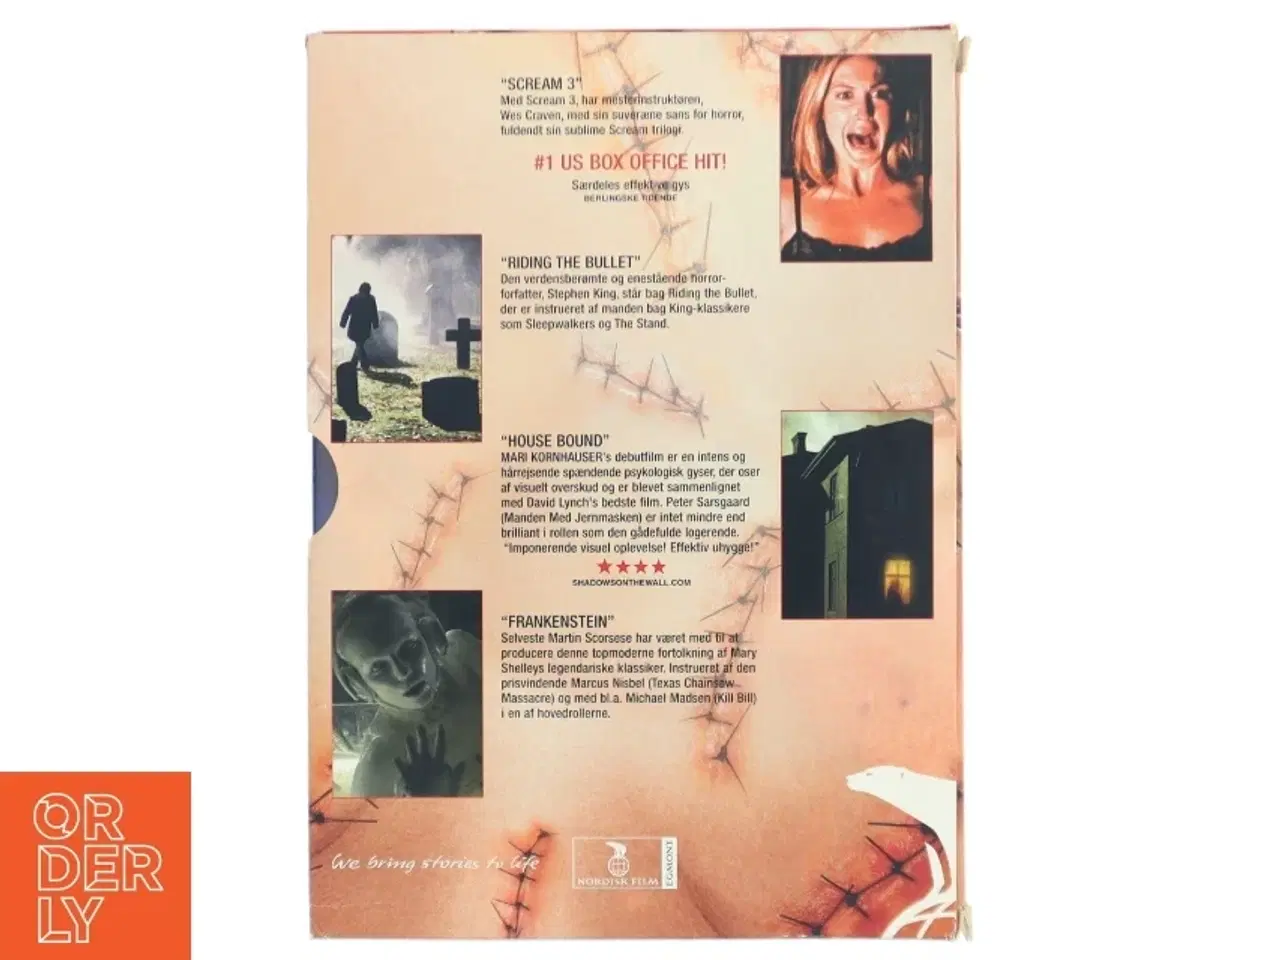 Billede 2 - DVD samling med gyserfilm fra Nordisk Film